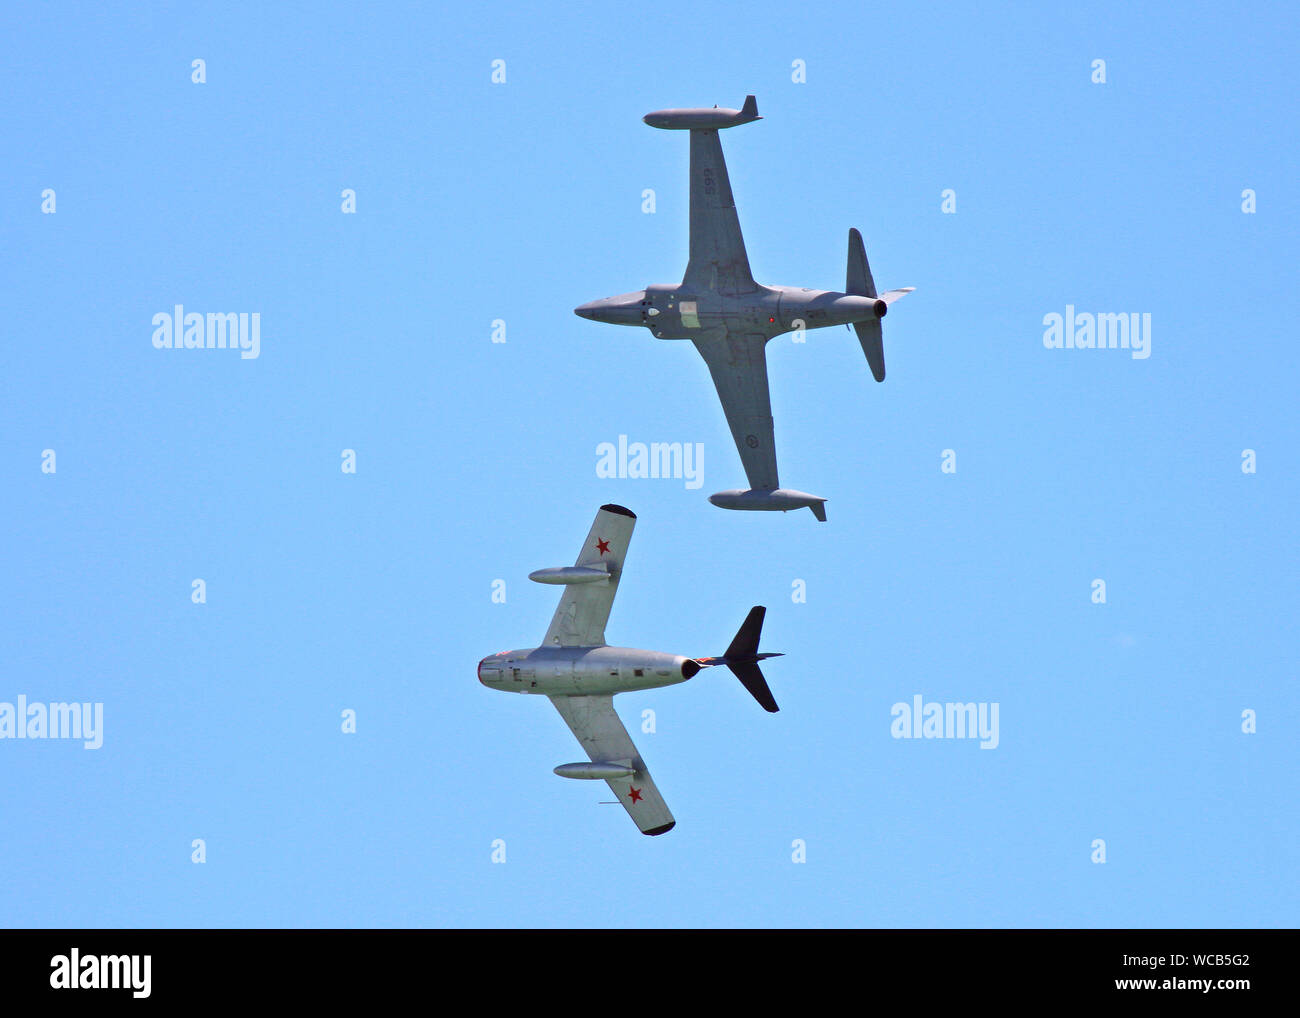 La Norwegian Air Force Escadron Historique envoyé ces avions à Eastbourne's Airshow, UK, 2019. Haut de photo un T-33 Shooting Star, ci-dessous un Mig-15. Banque D'Images